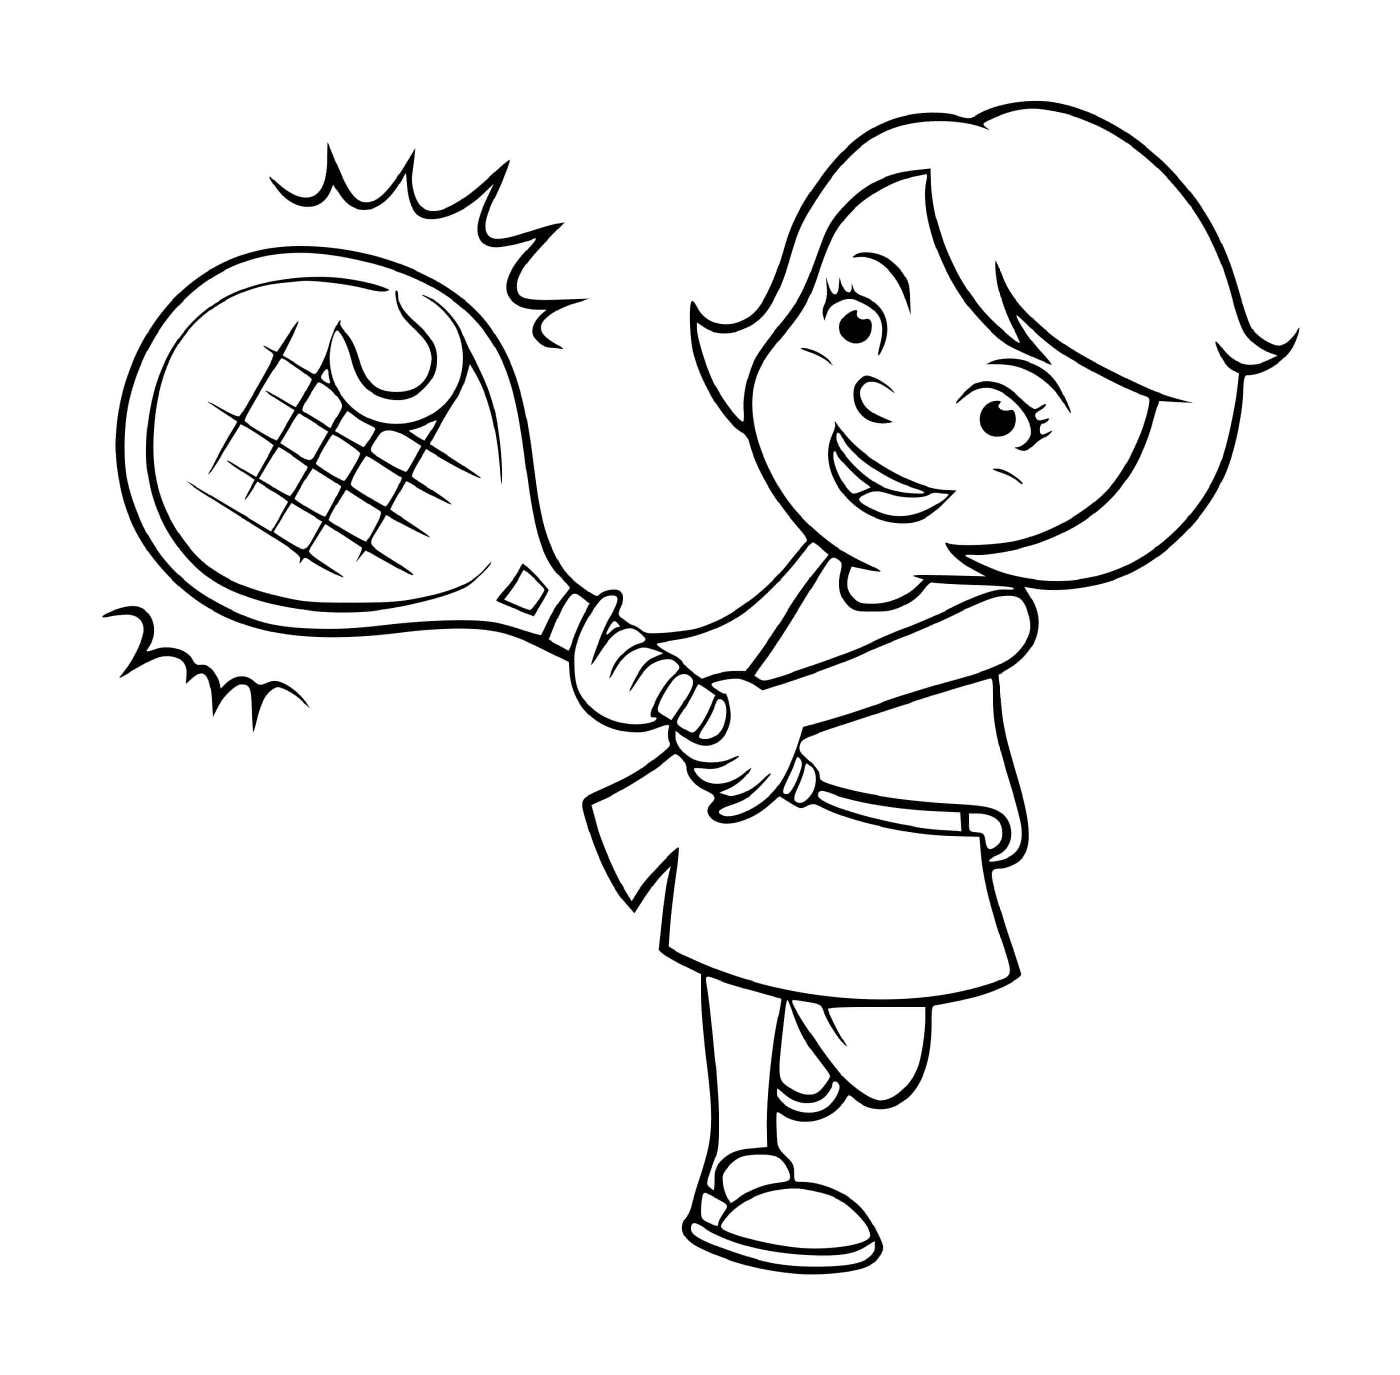   Une fille joue au tennis avec passion 